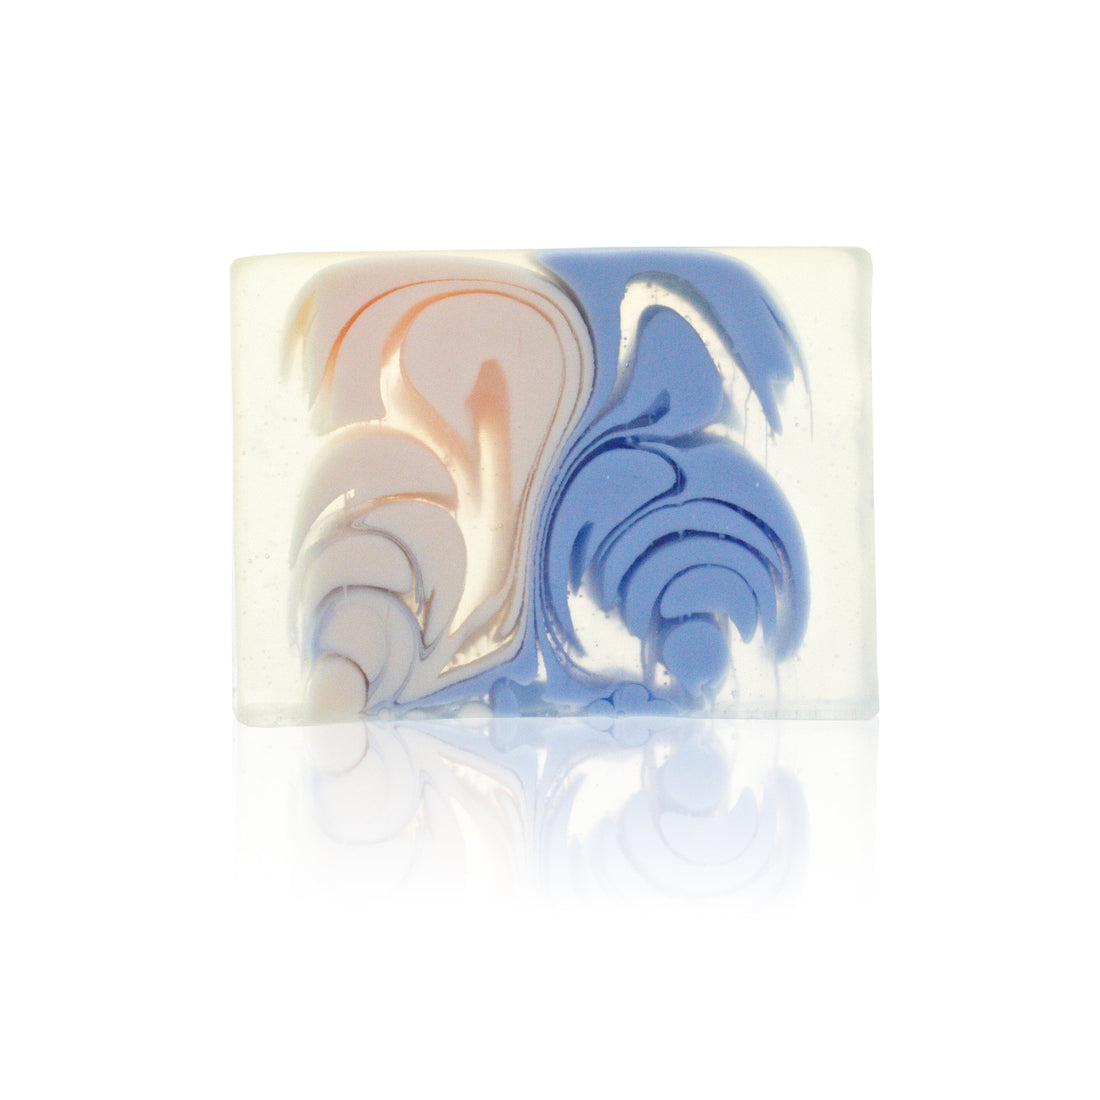 Hand - crafted Soap - Pharoah - Slice 100g - best price from Maltashopper.com HSBS-08